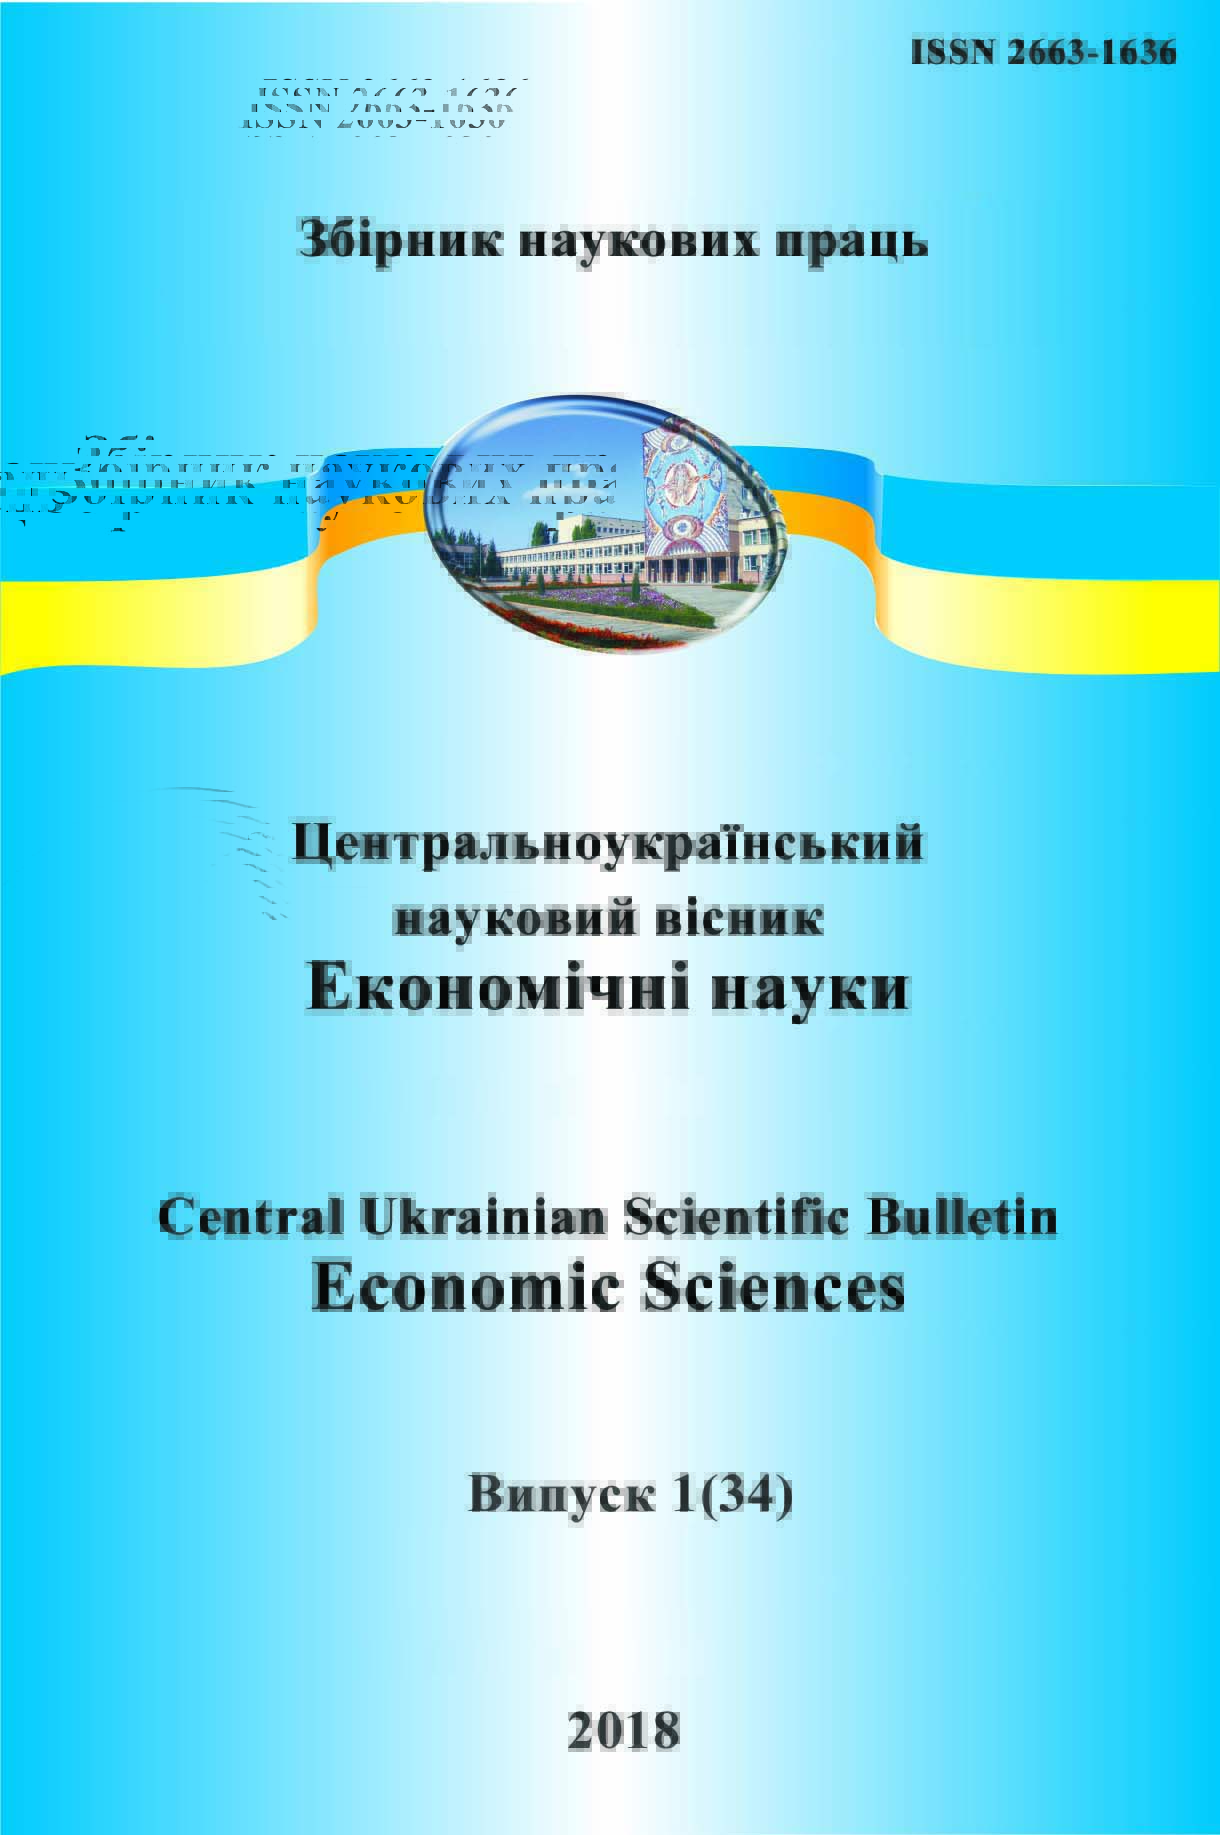 Центральноукраїнський науковий вісник. Економічні науки